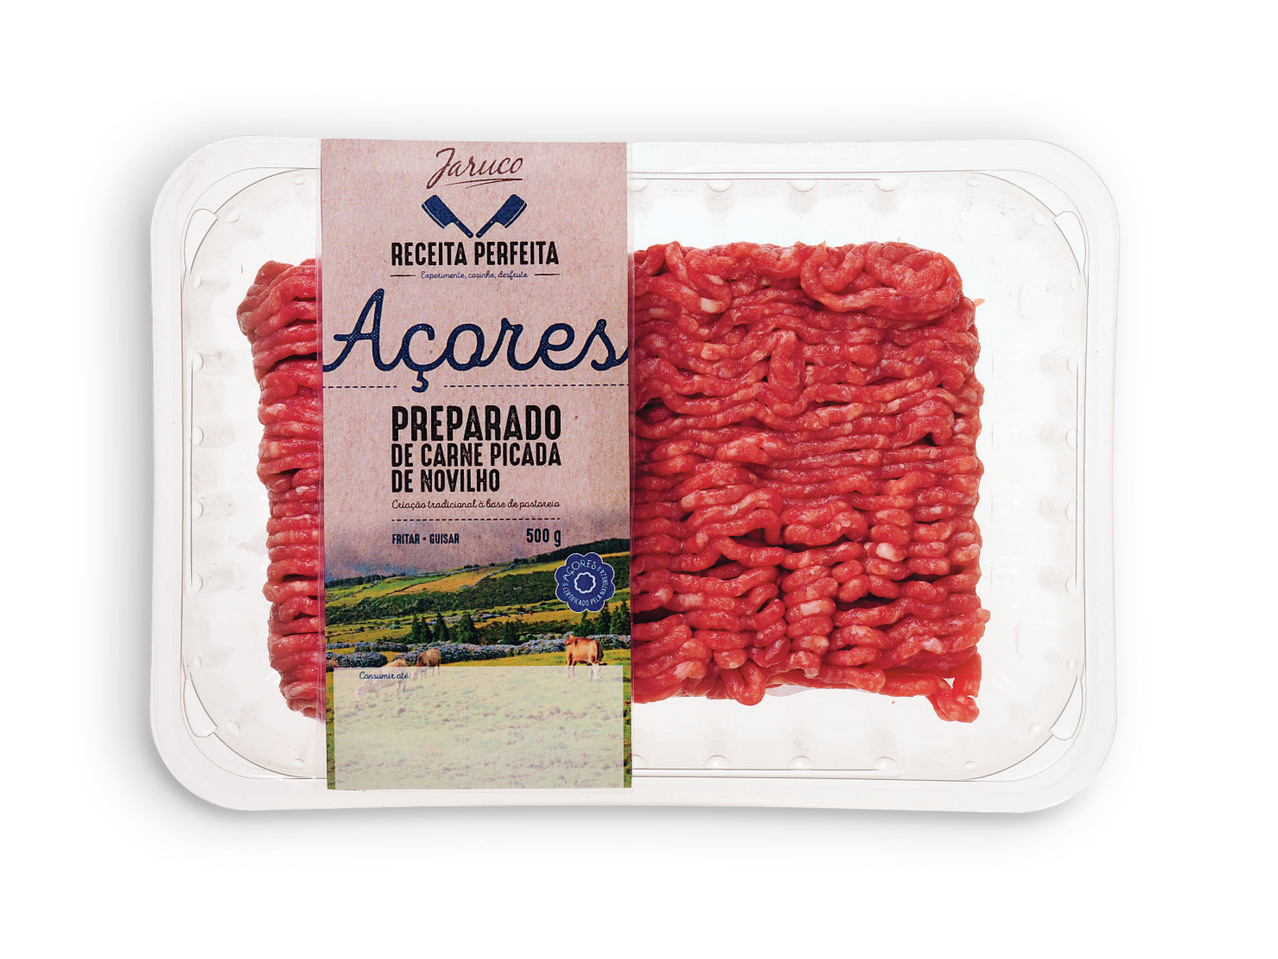 JARUCO(R) Preparado Carne Picada de Novilho dos Açores